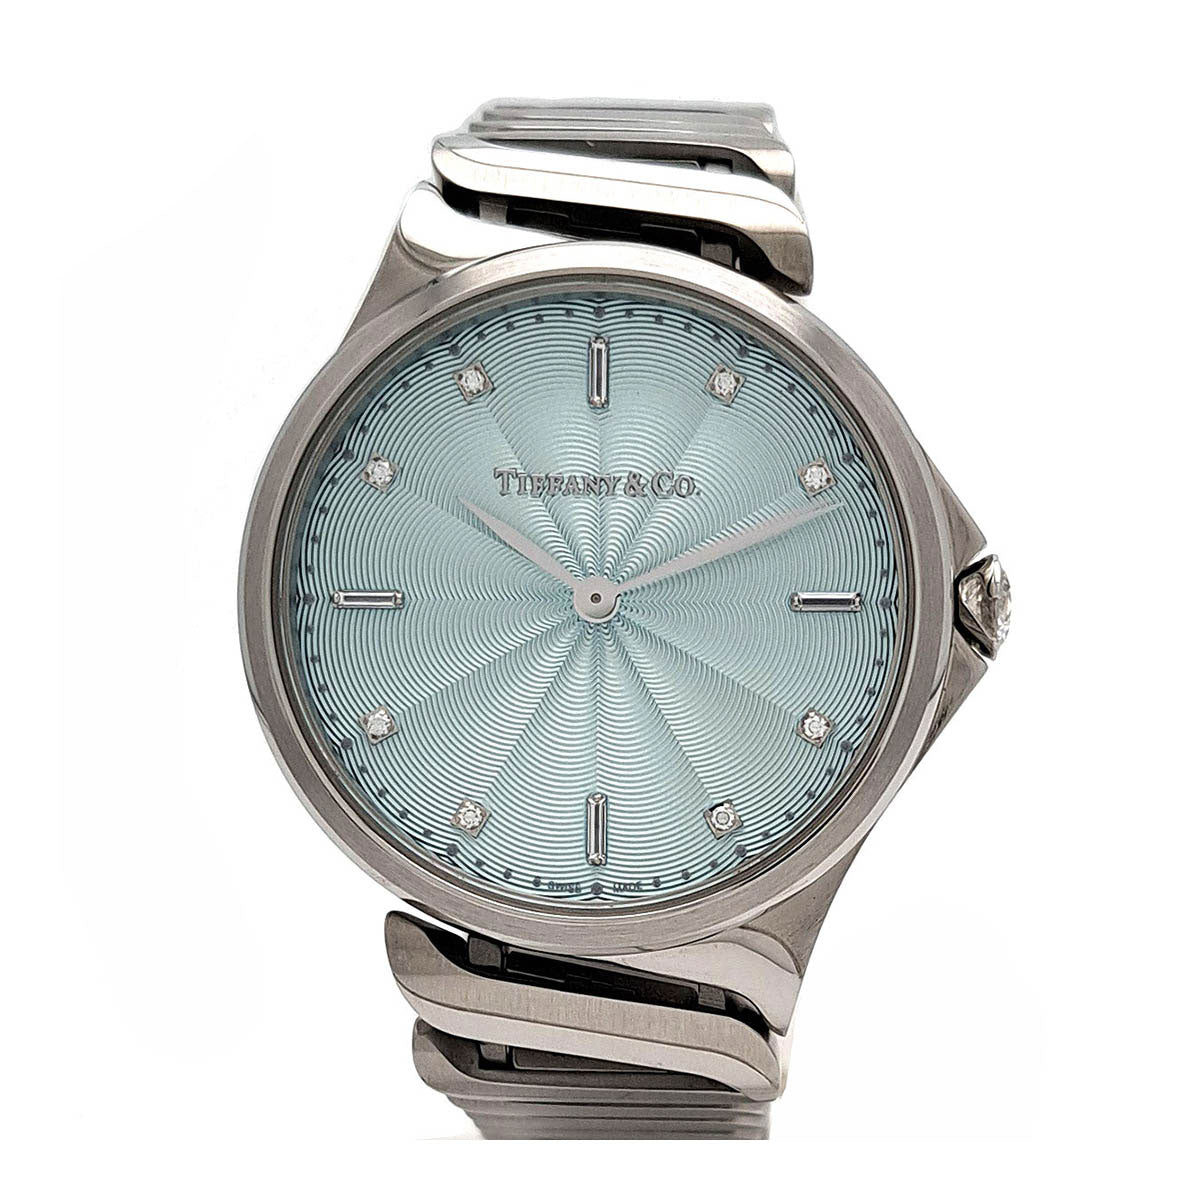 Quartz Metro Wrist Watch   6.0874816E7